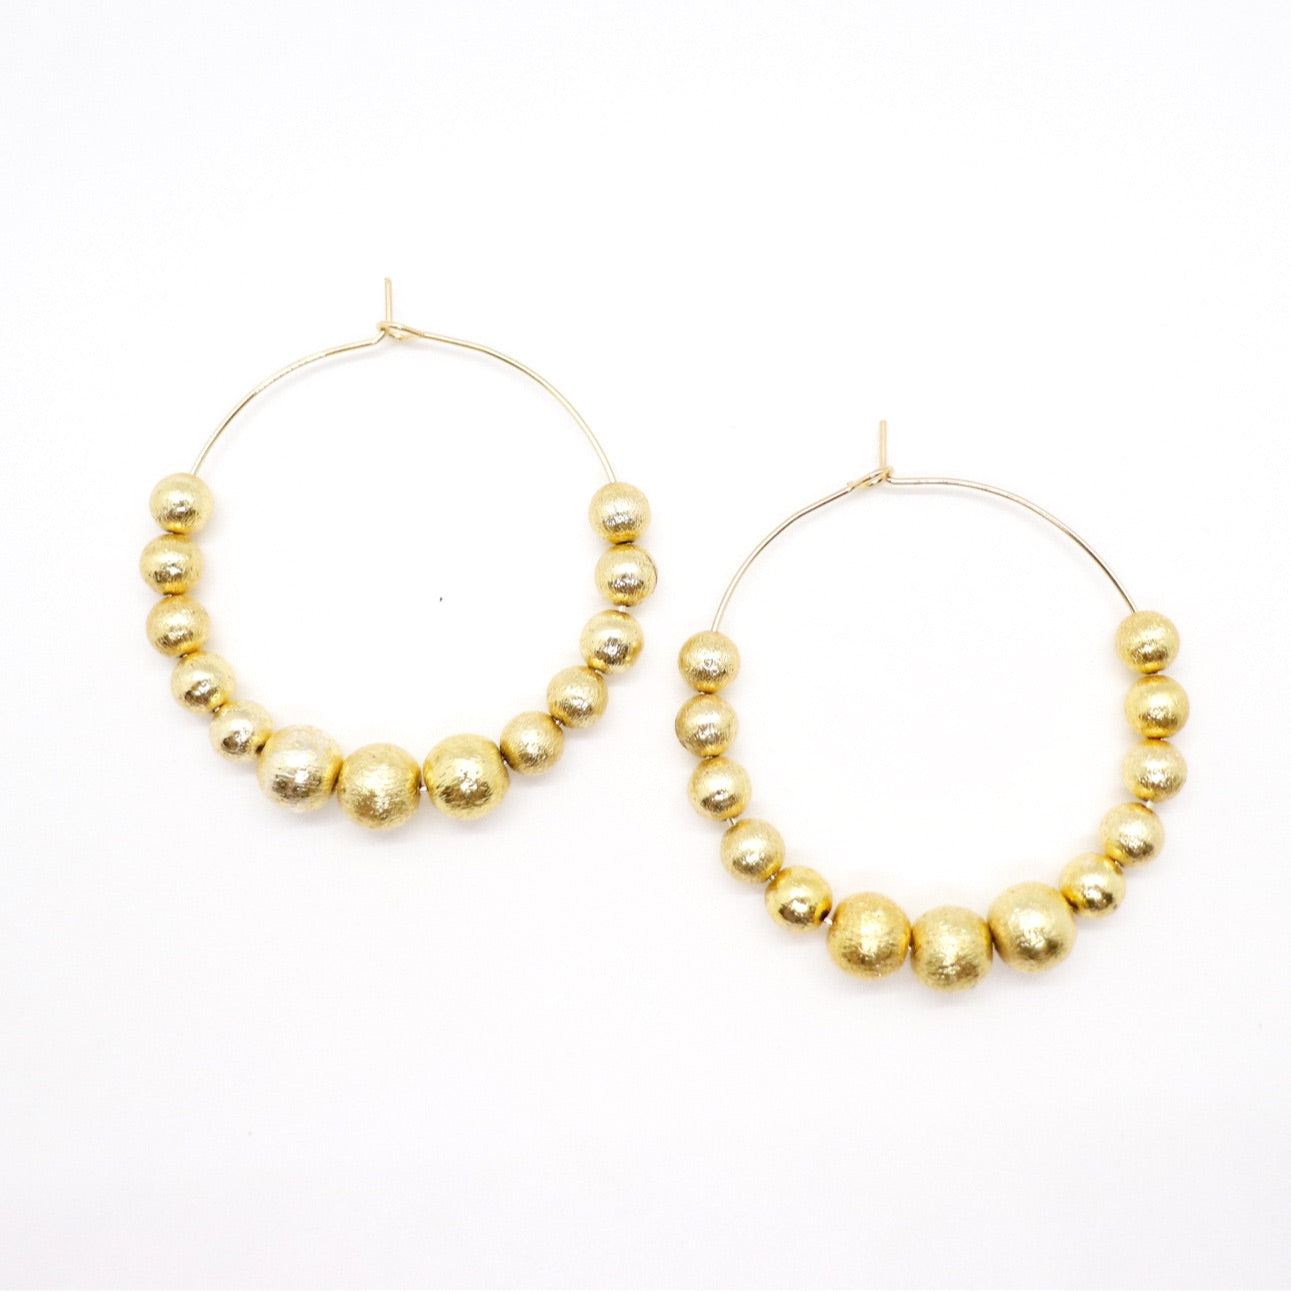 Brushed Gold Beaded Hoop Earrings - Large